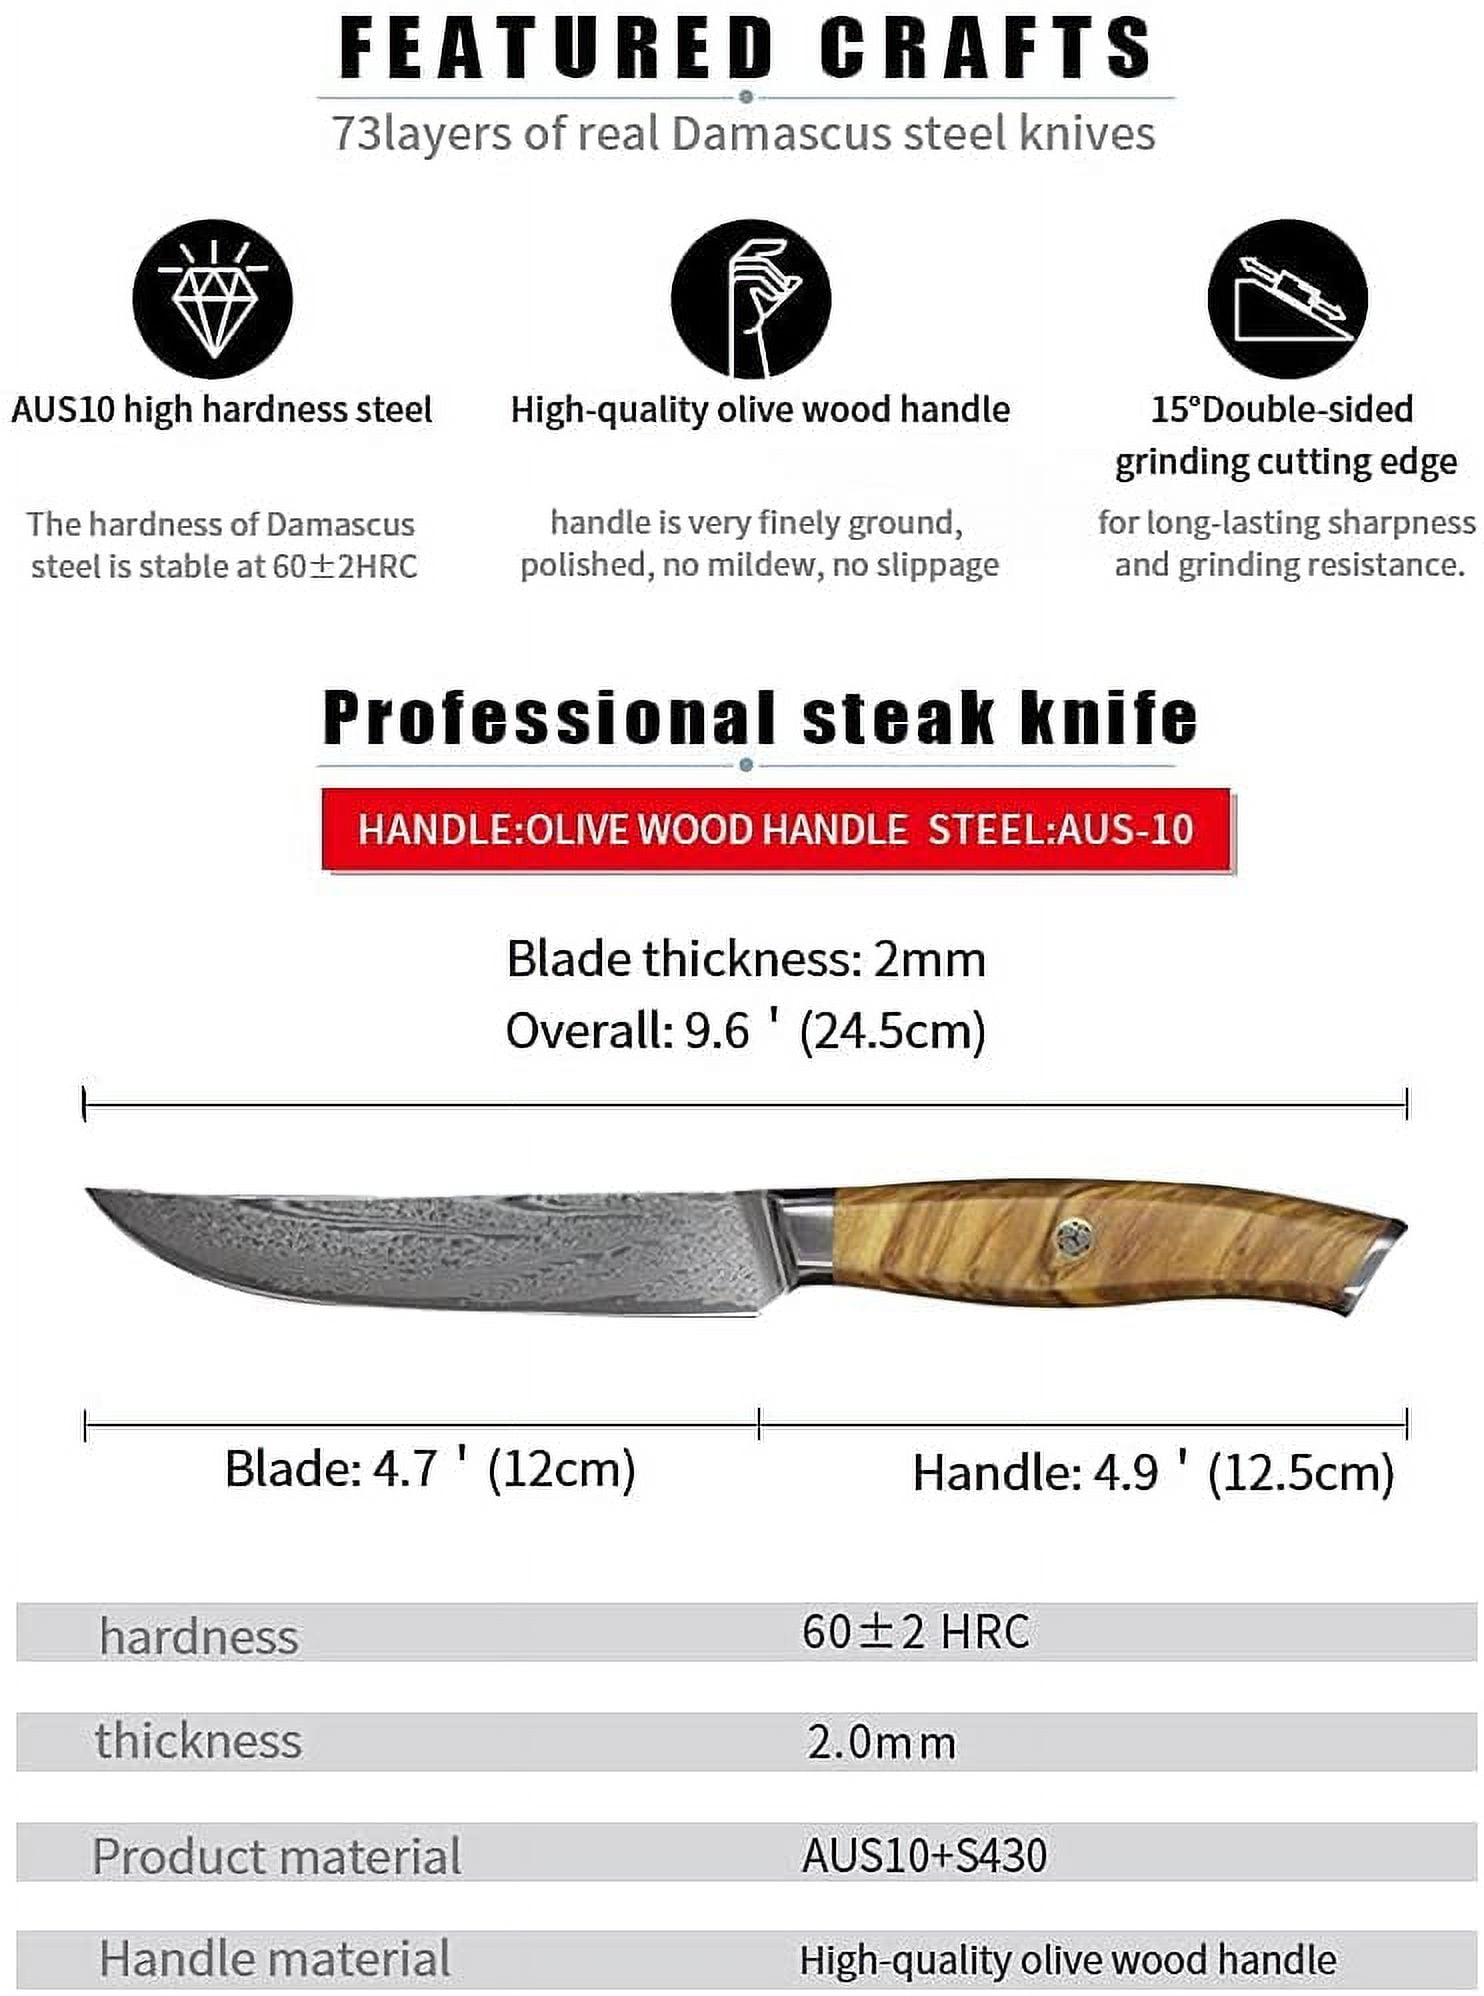 5100USS - BONE STEAK KNIVES (6)